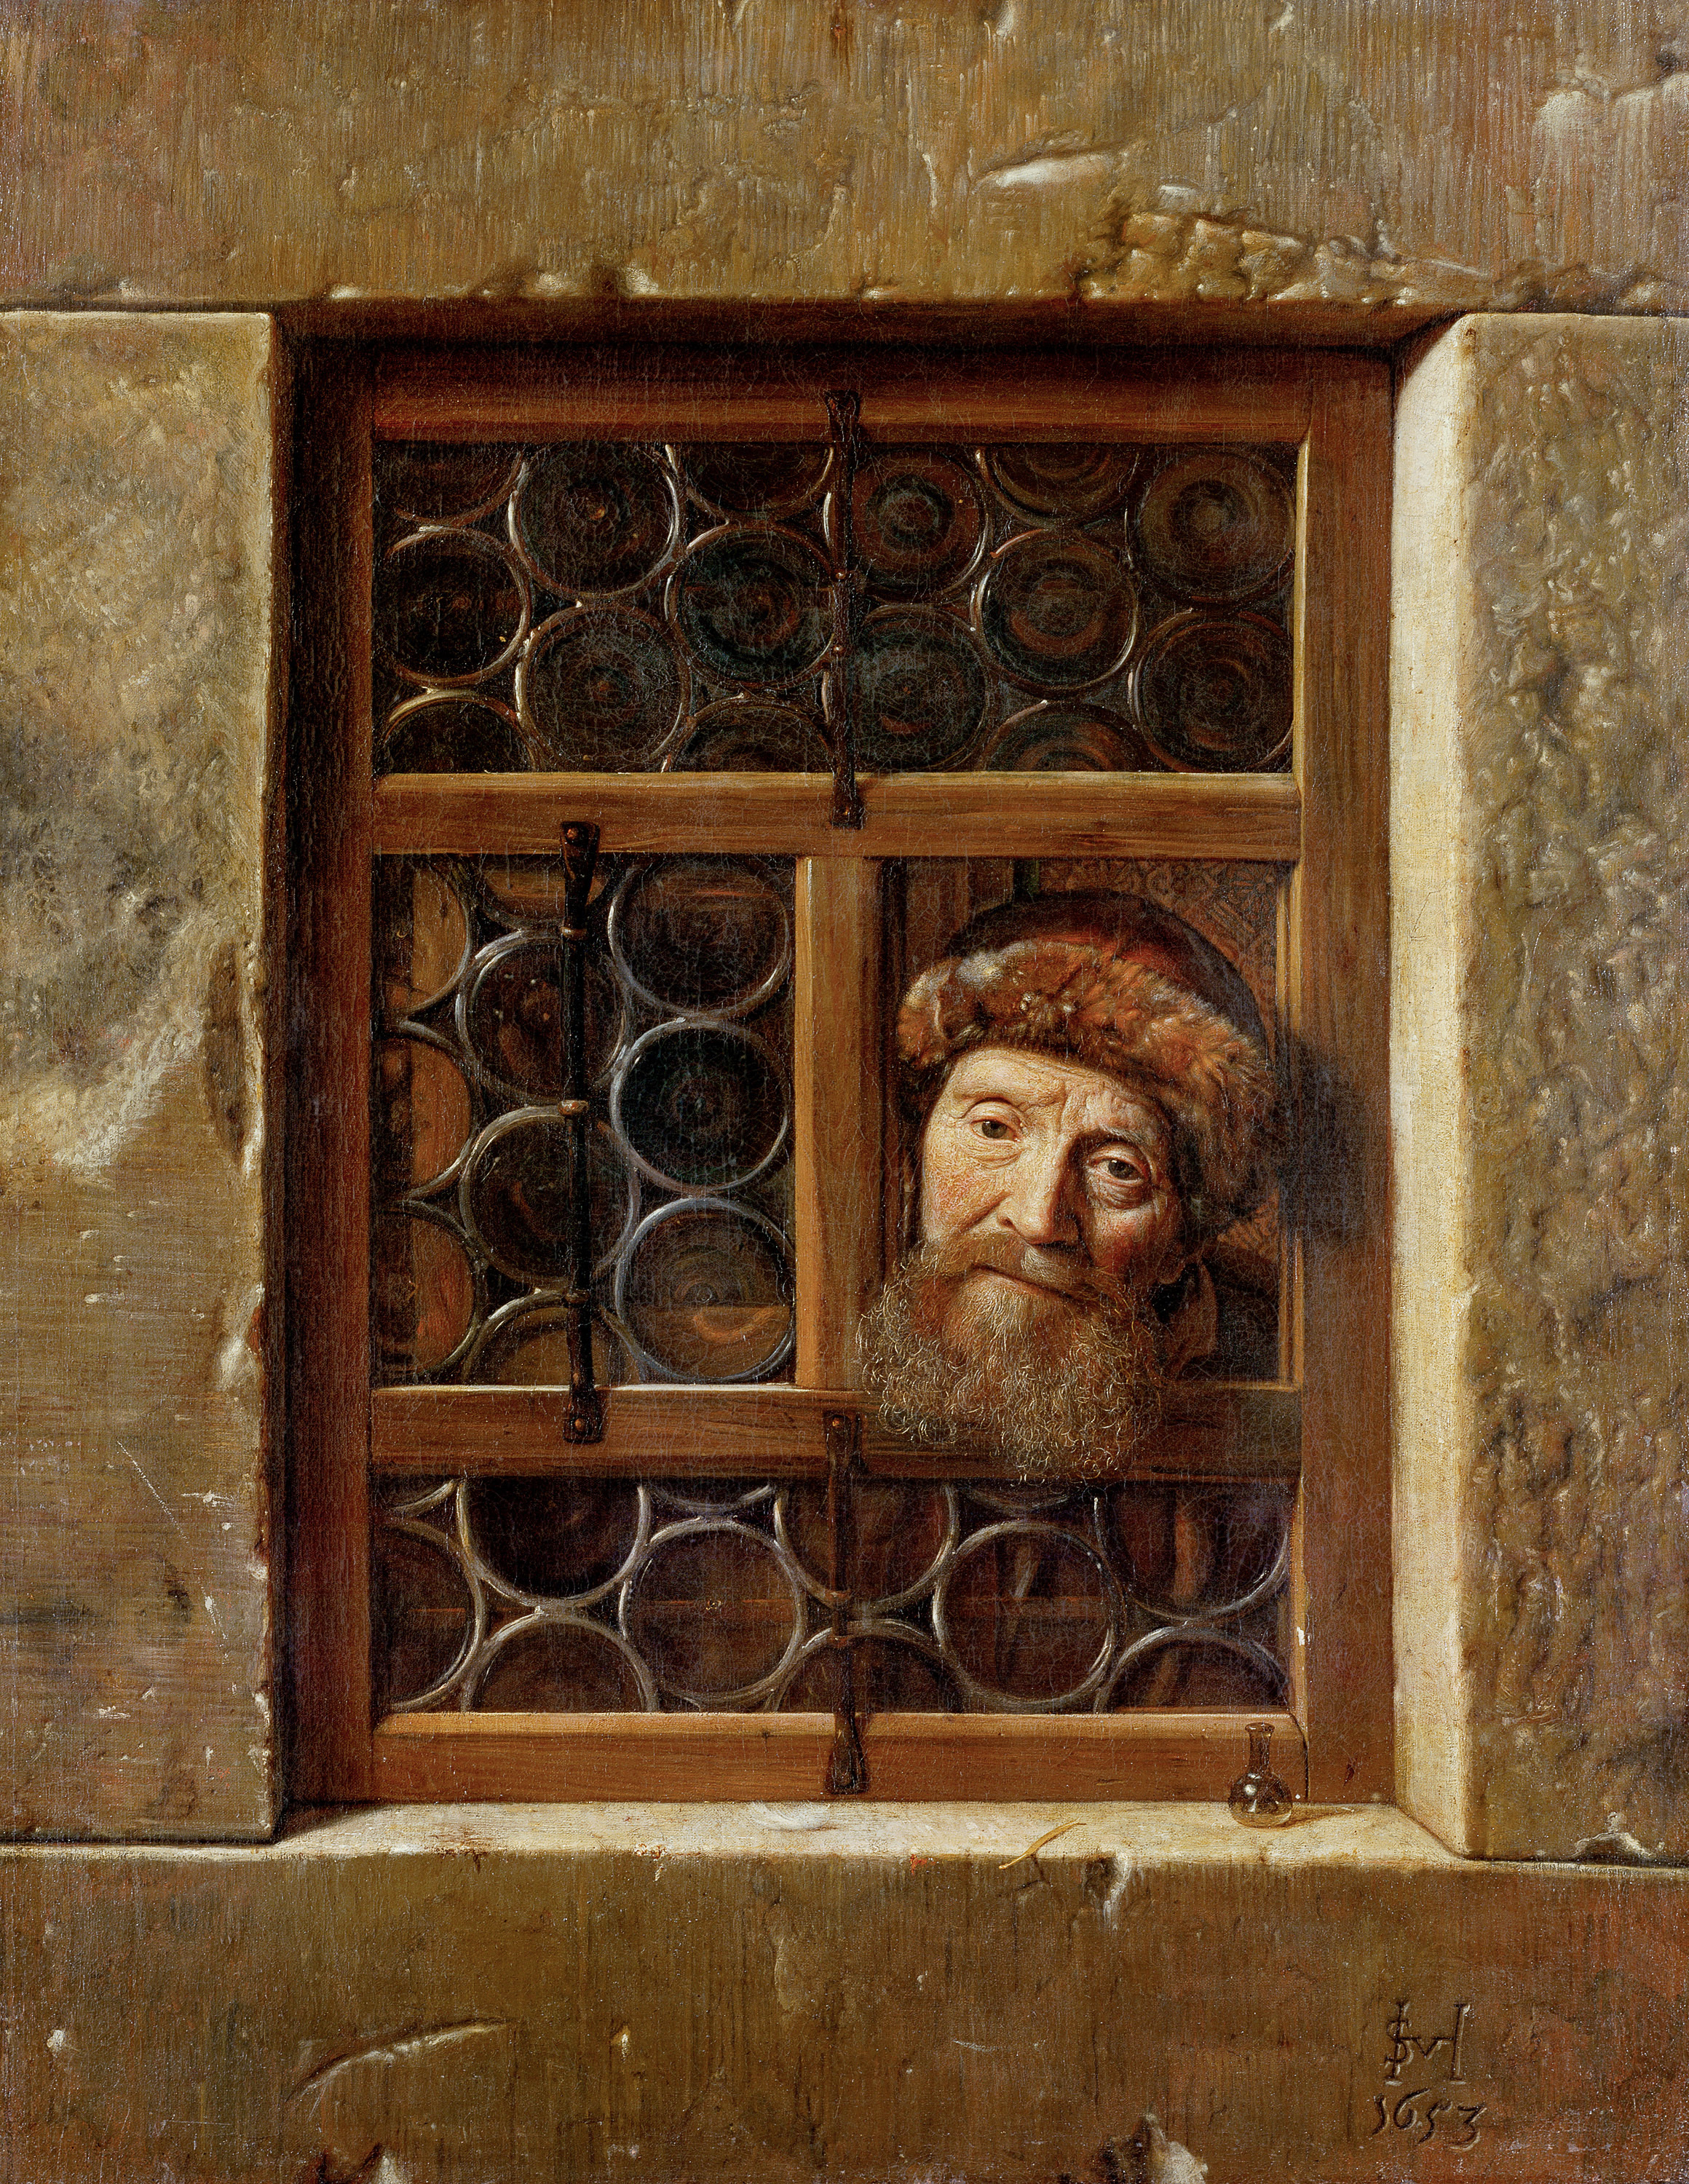 Old Man at the Window by Samuel van Hoogstraten - 1653 - 111 cm × 86,5 cm Kunsthistorisches Museum